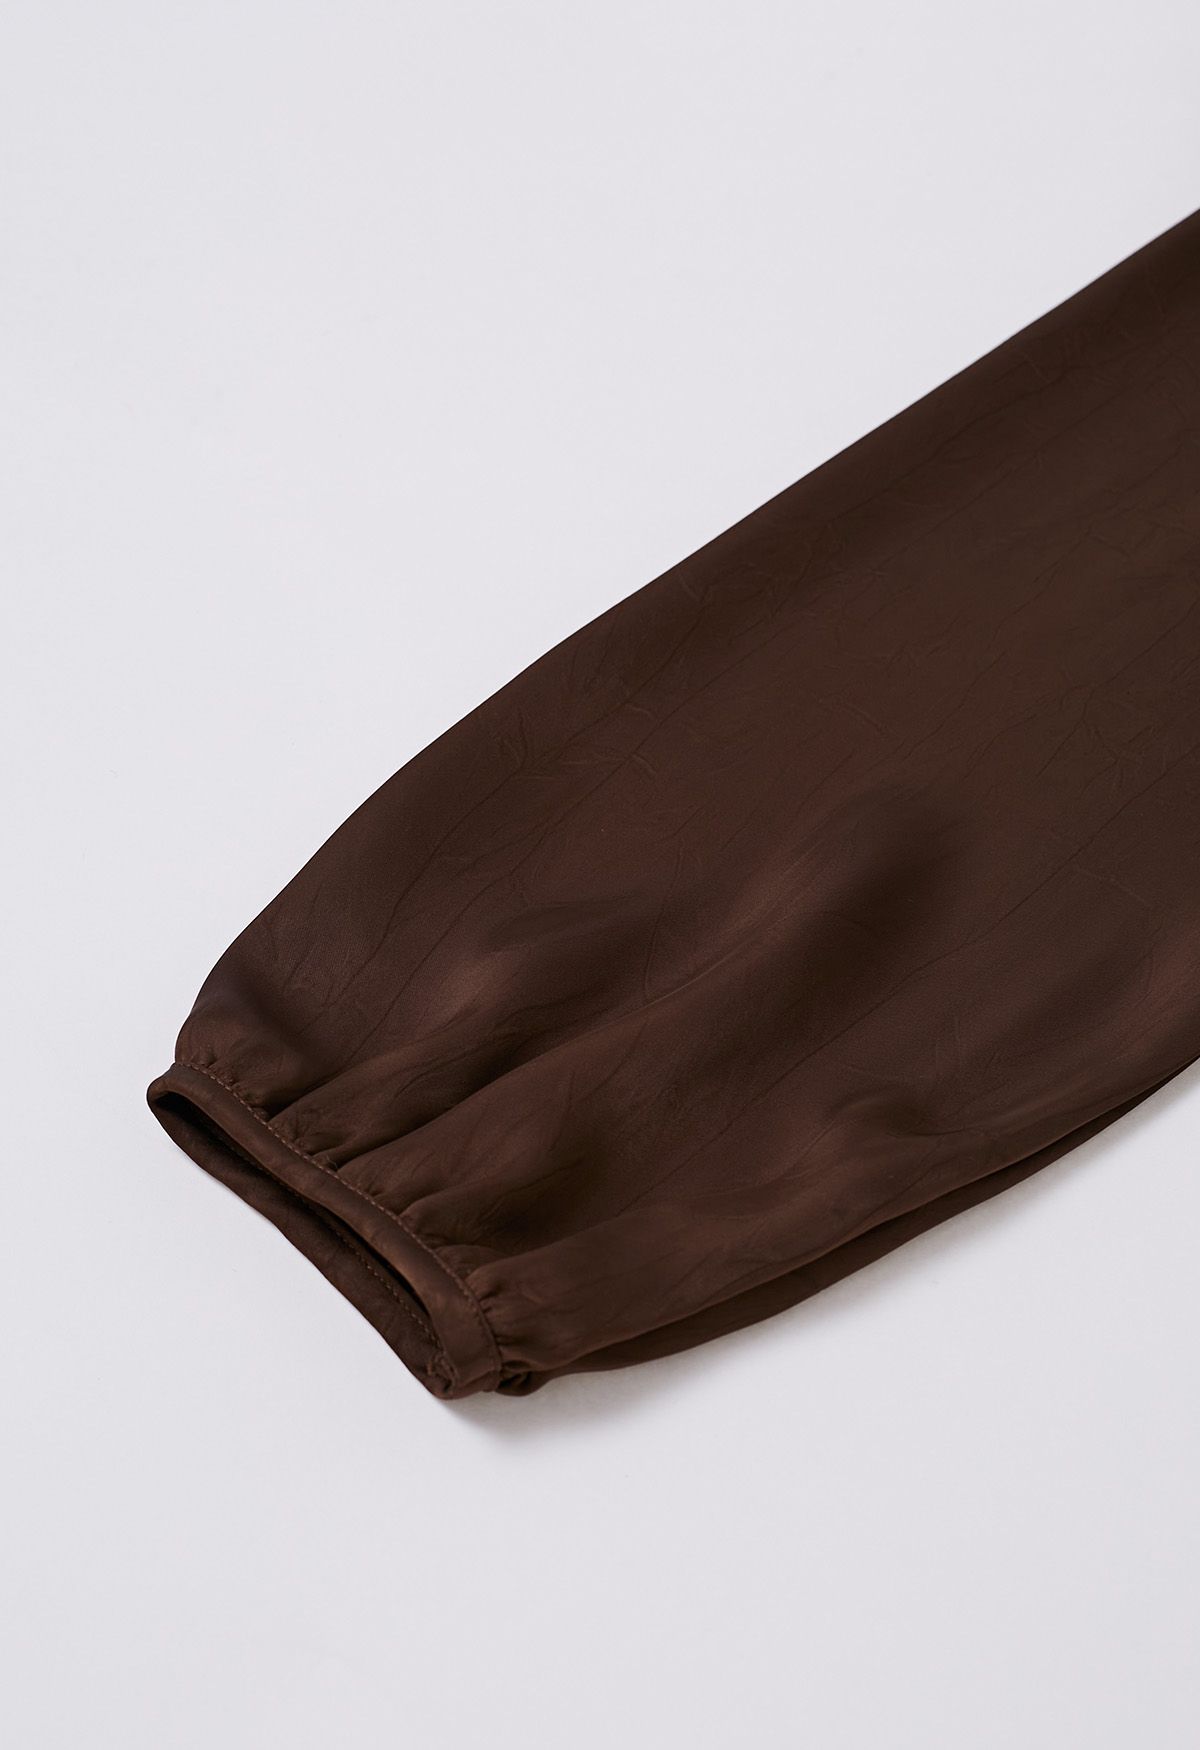 Tie Waist Bubble Sleeve Texture Top in Brown